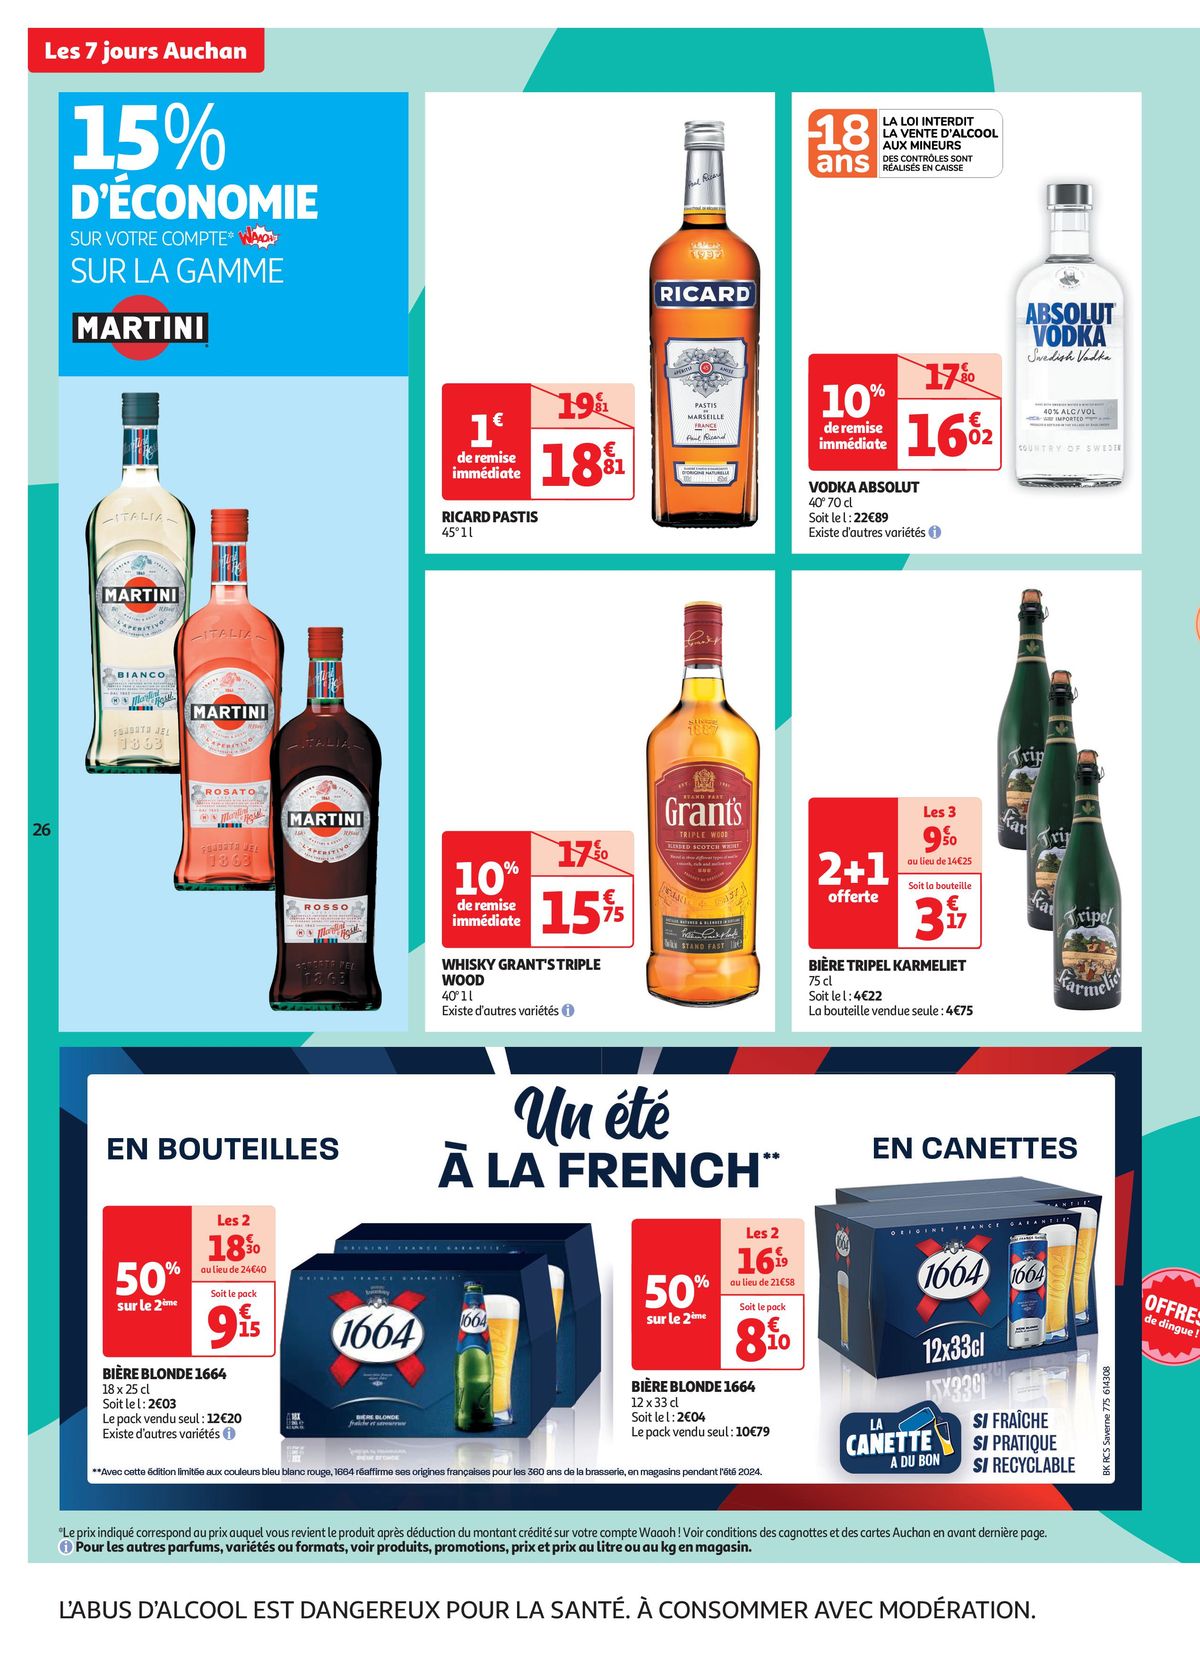 Catalogue C'est les 7 jours Auchan dans votre super !, page 00026